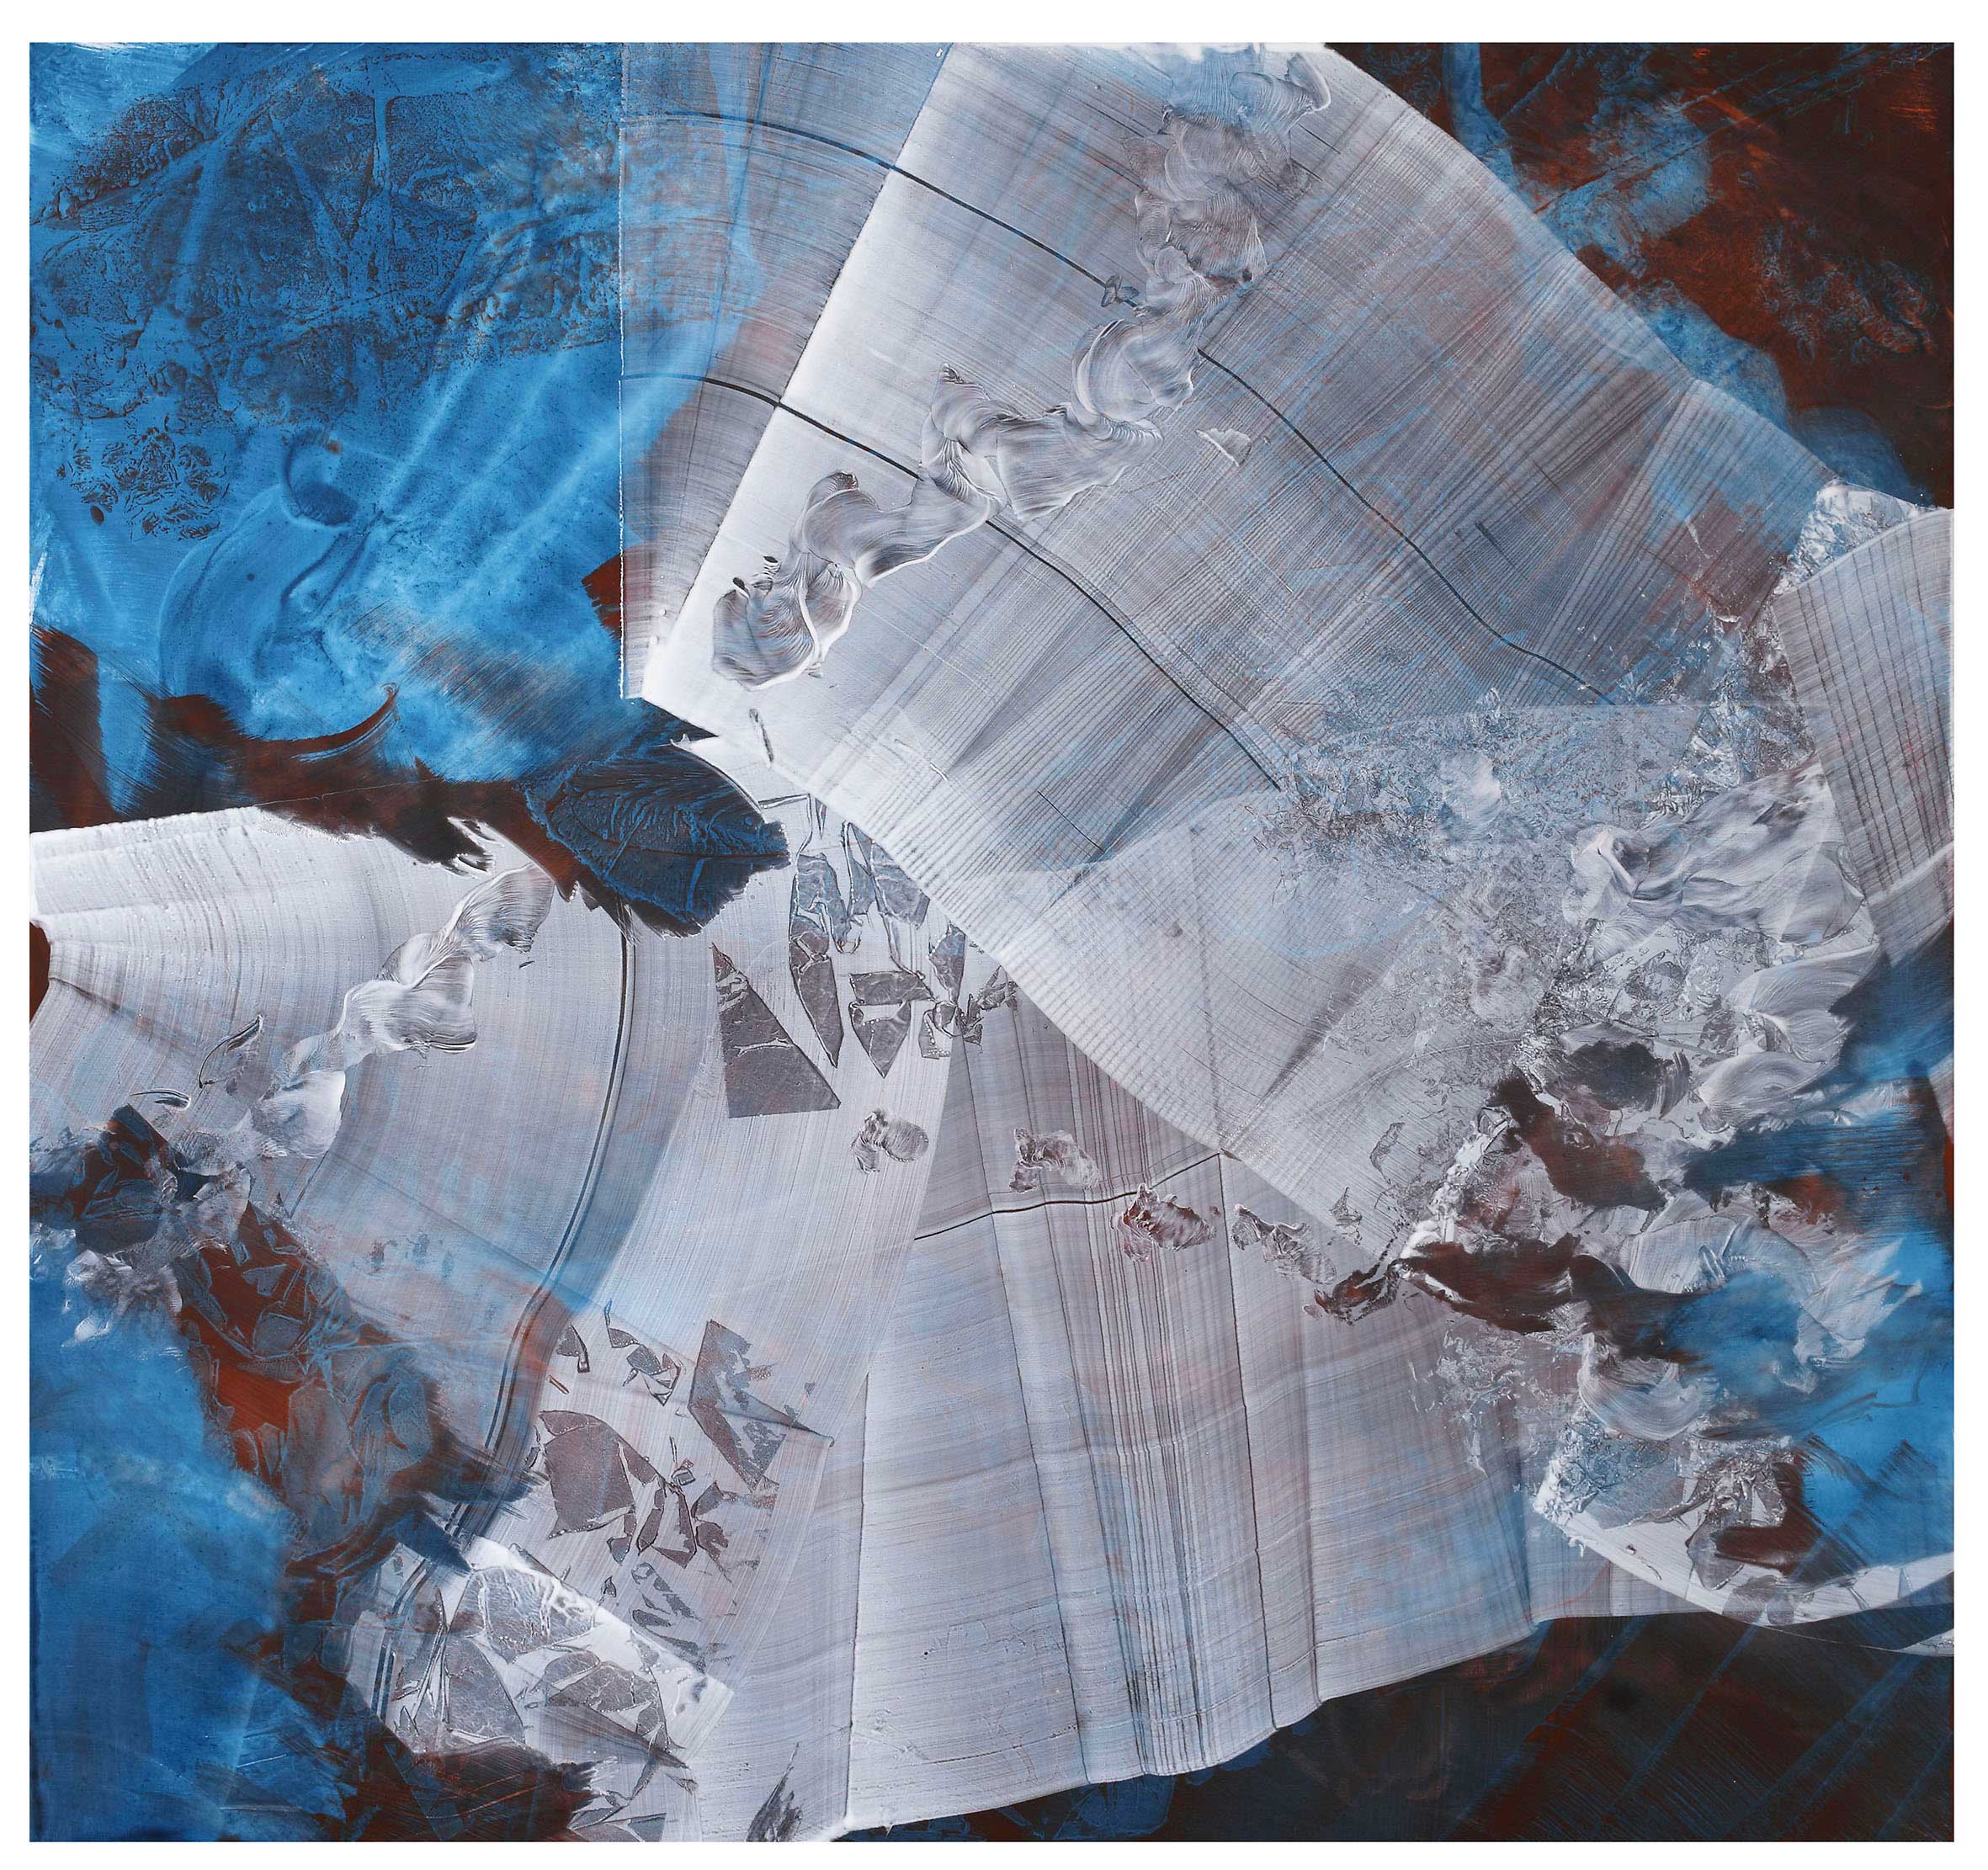 Dell’azzurro silenzio, omaggio a Luigi Nono*1, inchiostro di china e pigmenti su tela, cm 140x150, 2020